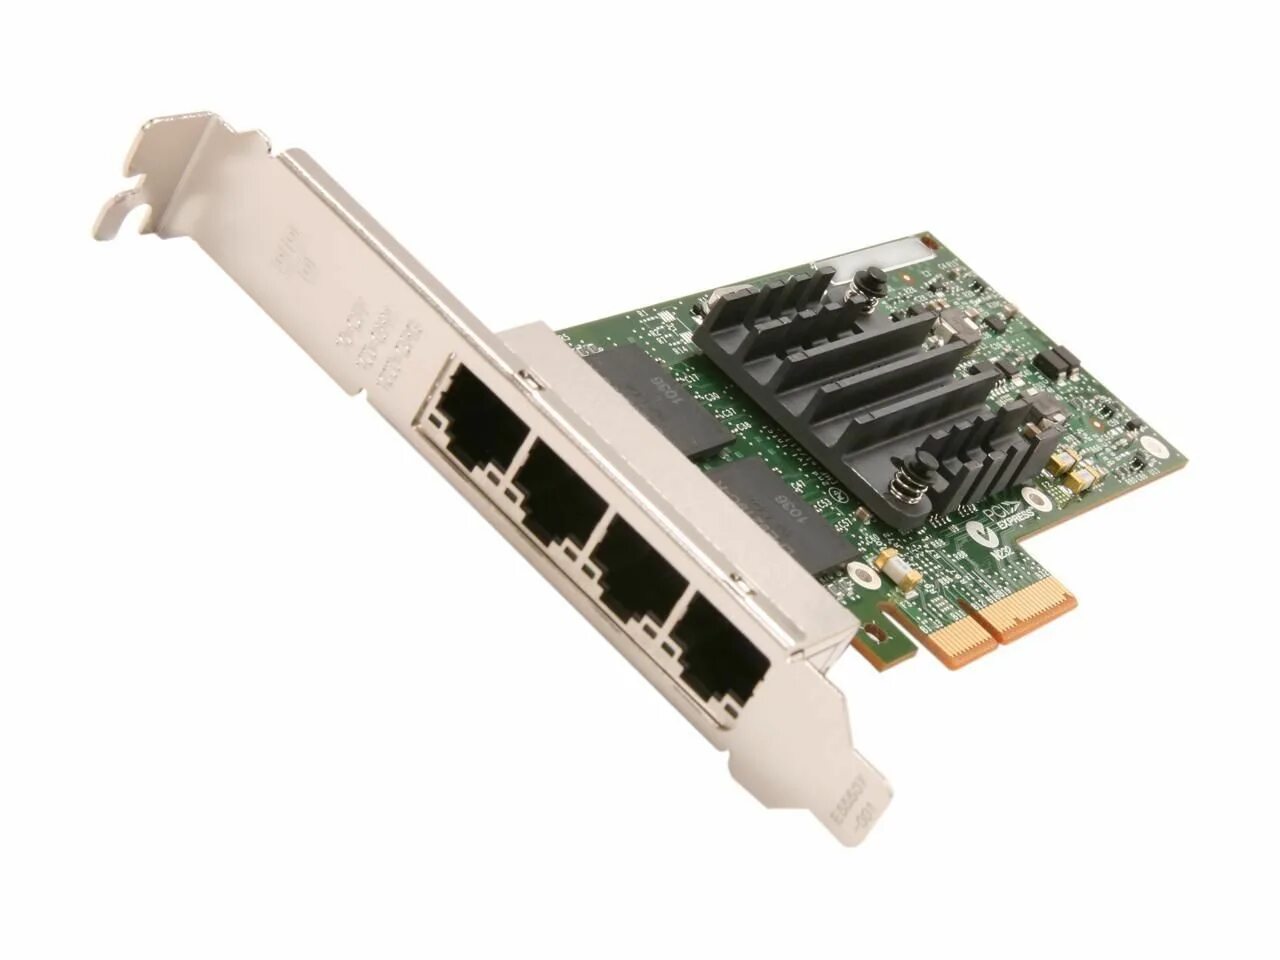 Интел экспресс. Сетевая карта Intel e1g44htblk. Сетевая карта dell 5719 Quad-Port Adapter. Сетевая карта Intel x710da2blk. Сетевой адаптер Intel Chipset i350-t4 Quad four rj45 Gigabit Ports Server Adapter PCI-E Card.